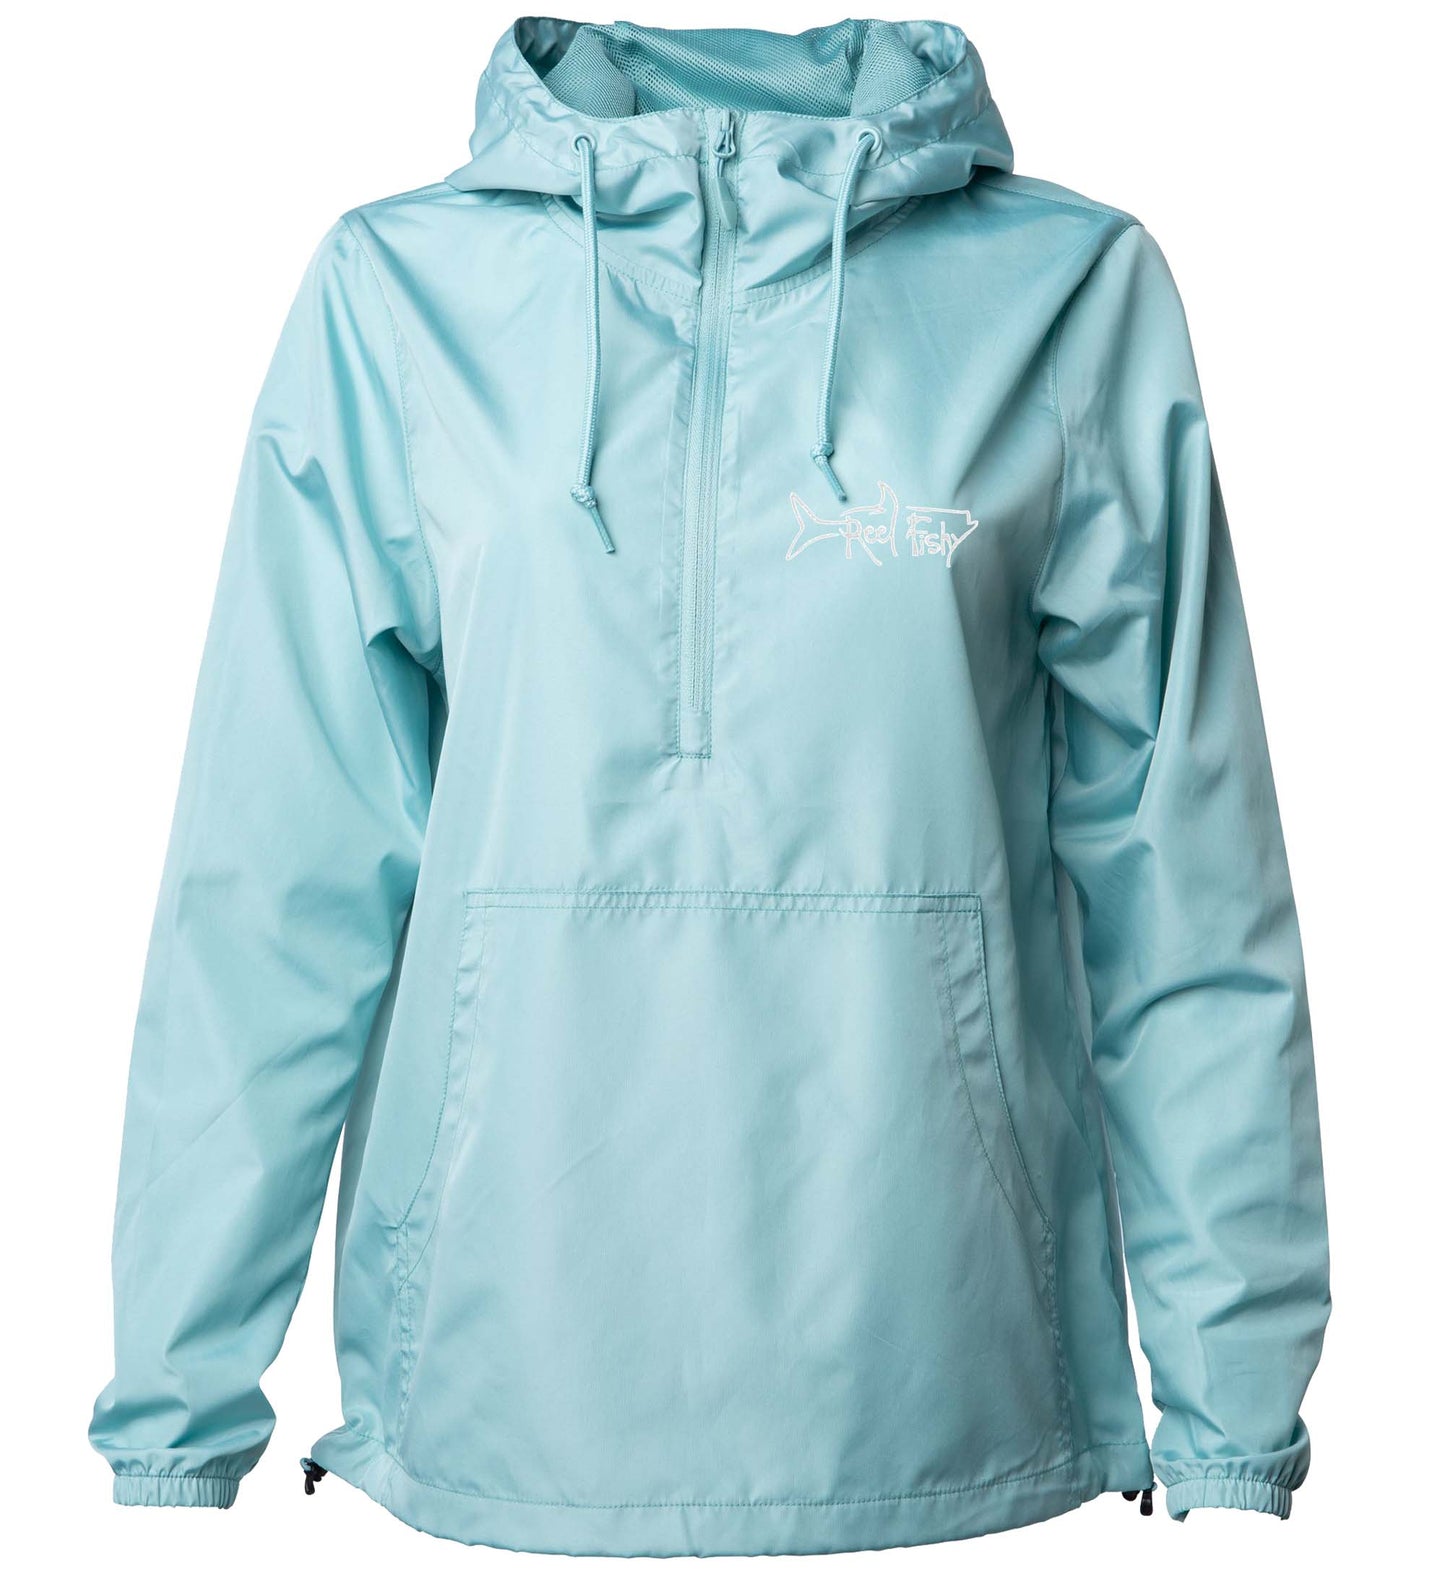 1/2 Zip Pullover Jacket in Aqua color - Reel Fishy Apparel